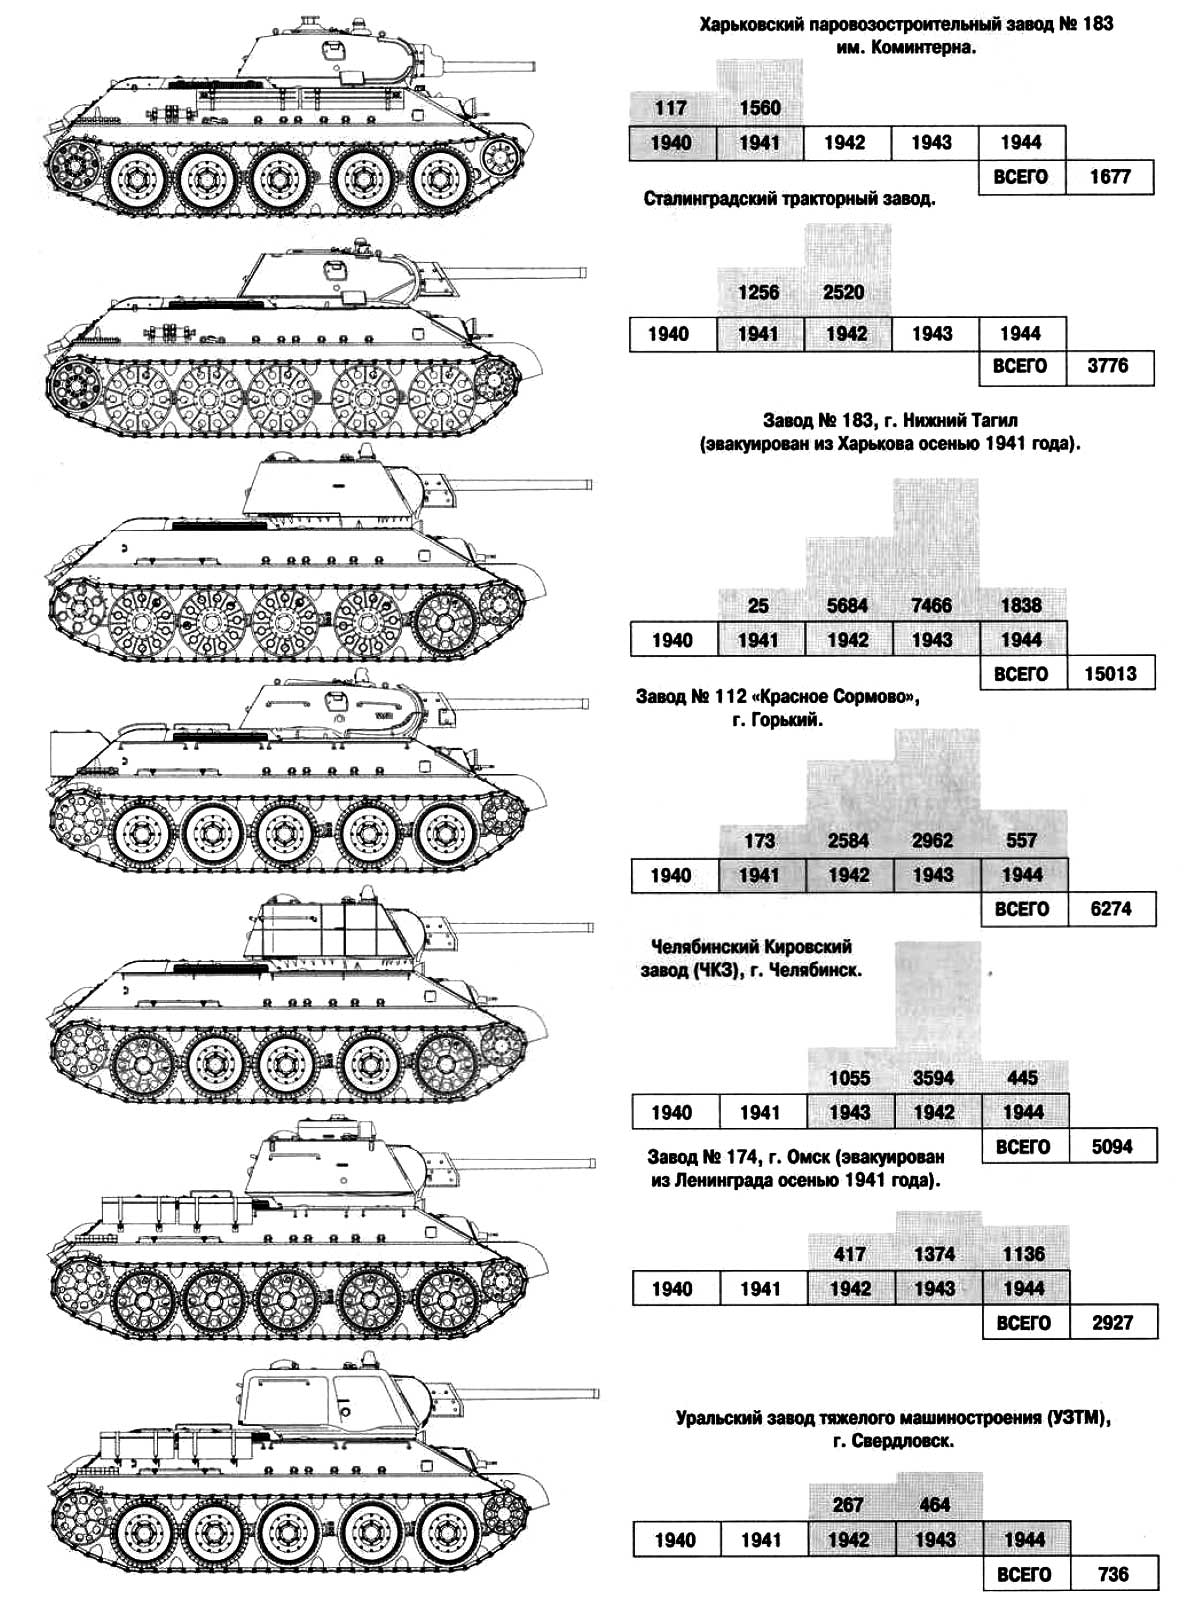 Сравнение Т-34 выпускаемых разными заводами